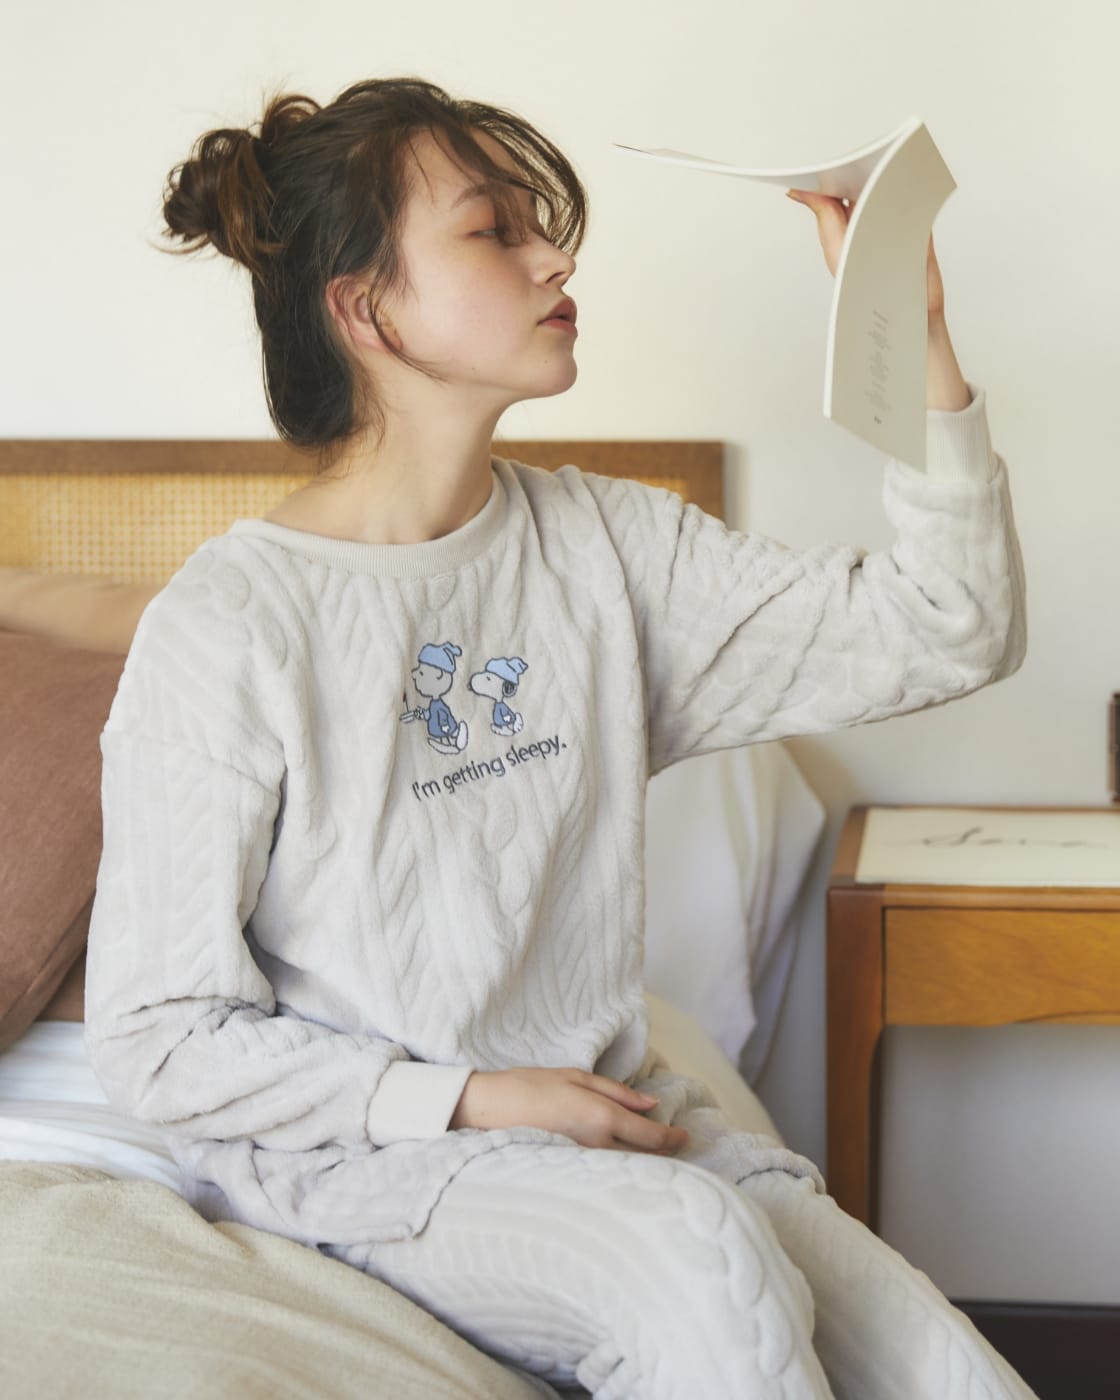 スヌーピー刺繍編み柄モコチュニック、スヌーピー刺繍編み柄モコパンツを着用している女性モデルの写真1